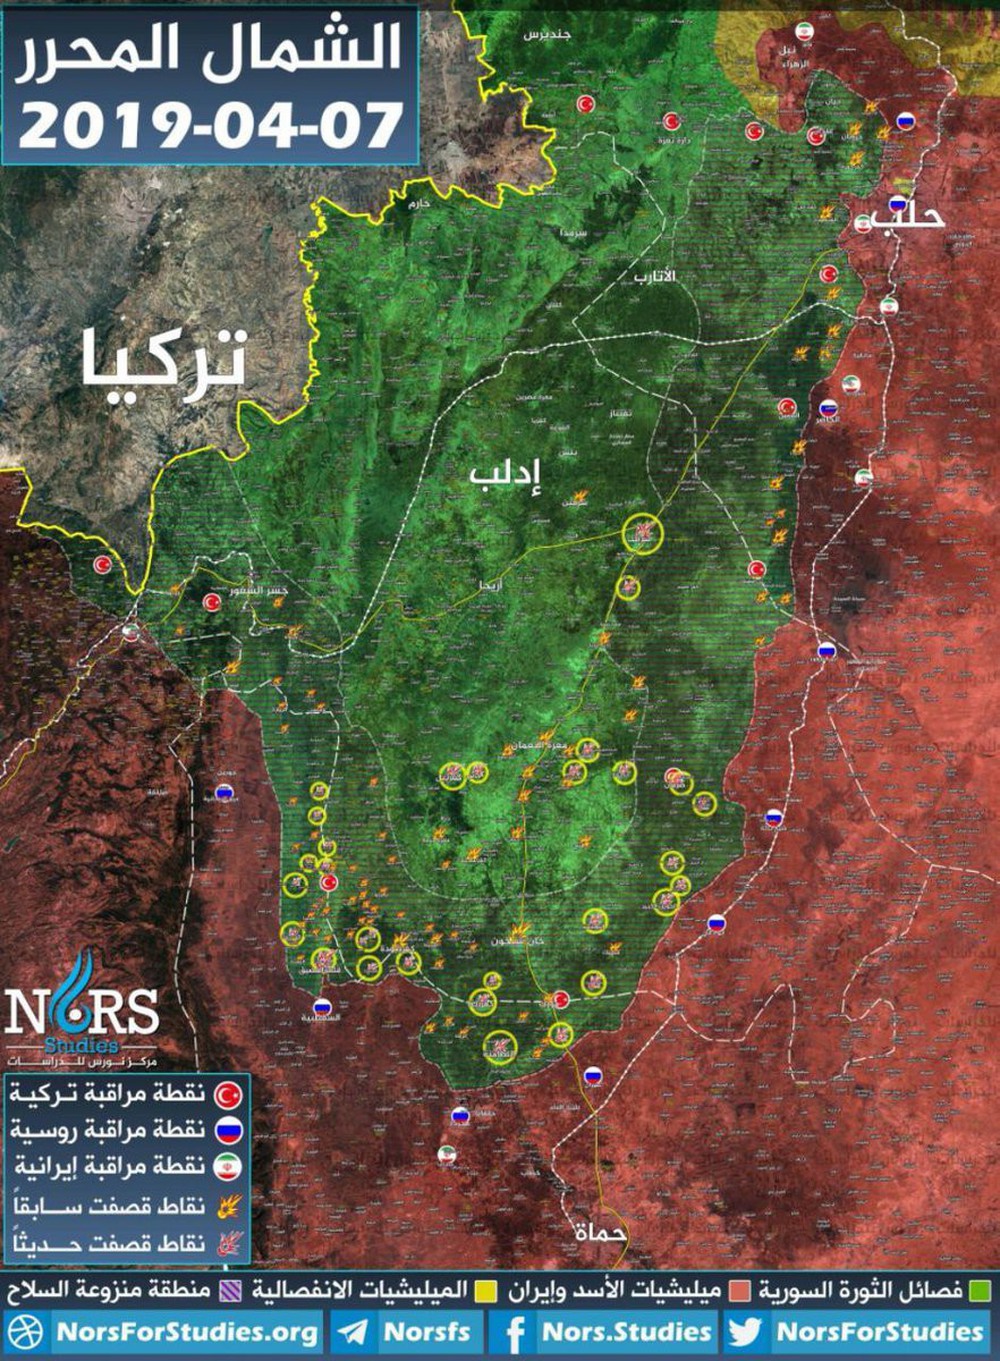 Cờ bí dí tốt: Nga-Syria đang chơi đòn dưới thắt lưng ở Idlib - Ảnh 1.